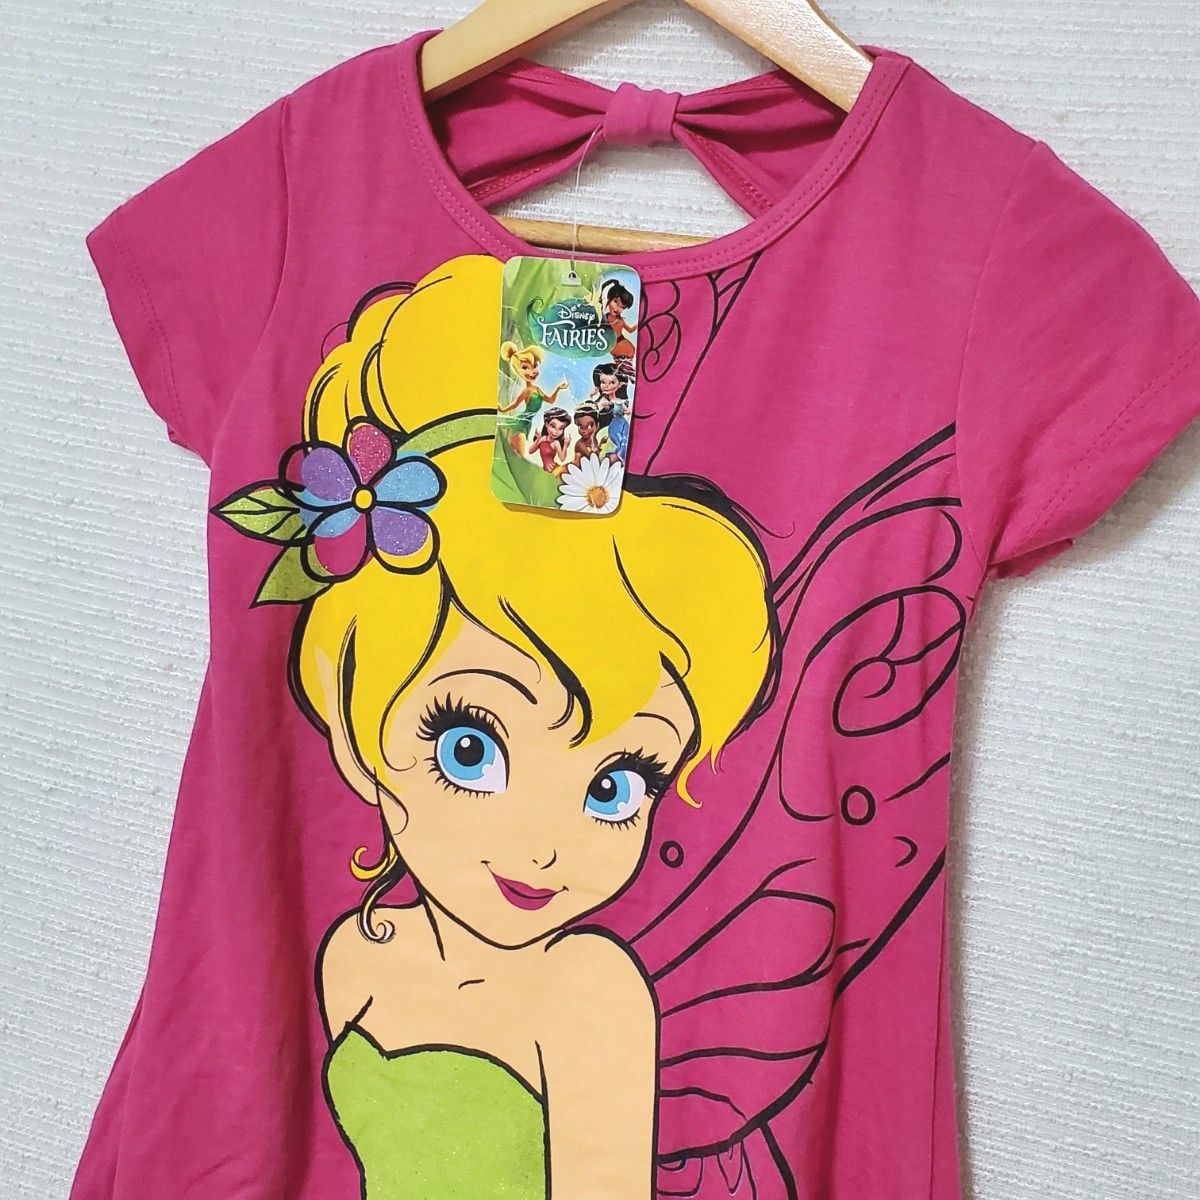 新品 Disney ディズニー FAIRIES ティンカーベル ワンピース 半袖Tシャツ  6サイズ 110～120 ピンク